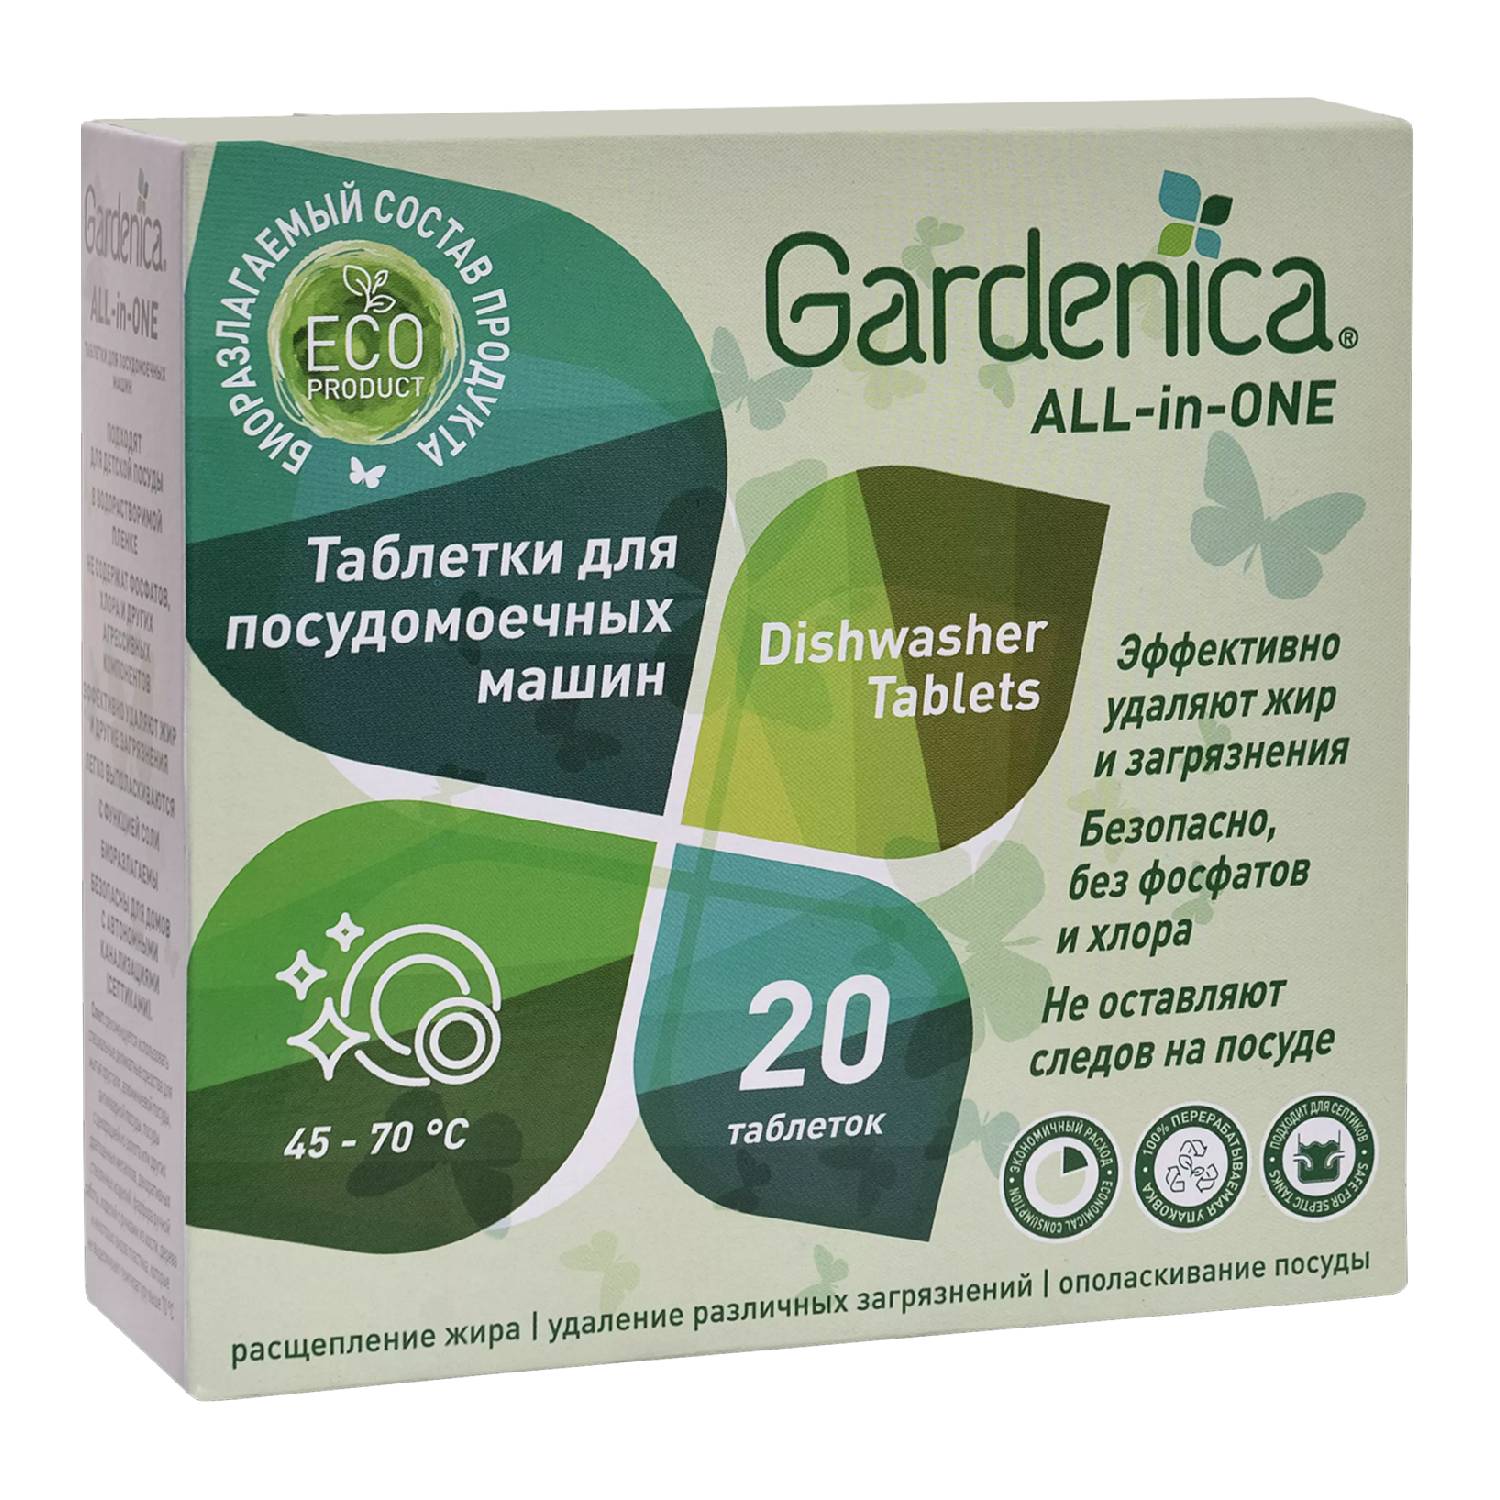 Gardenica Таблетки для посудомоечных машин, 20 шт (Gardenica, Посуда) цена и фото